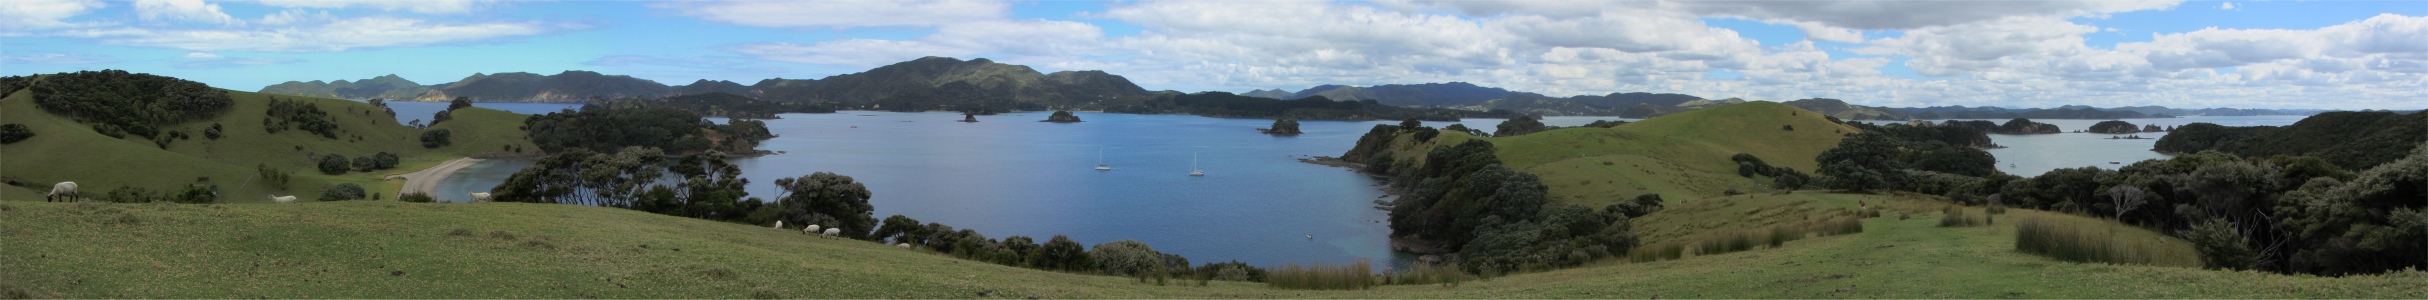 view_from_urupukapuka_island